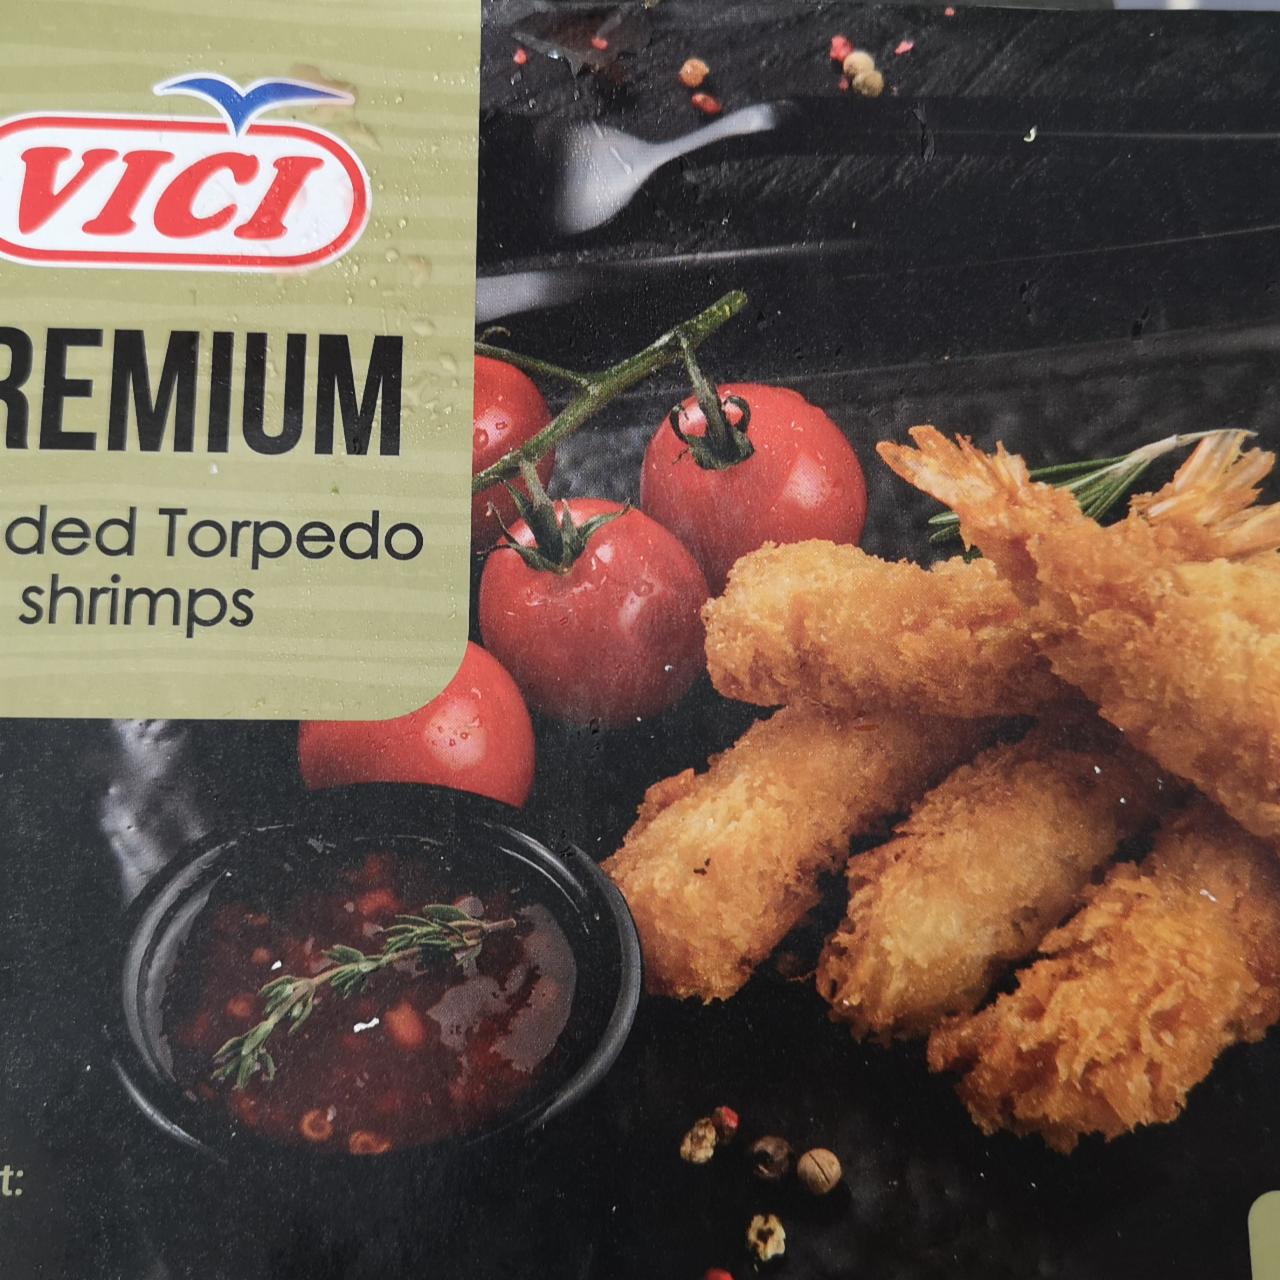 Fotografie - premium breaded torpedo shrimps Vici